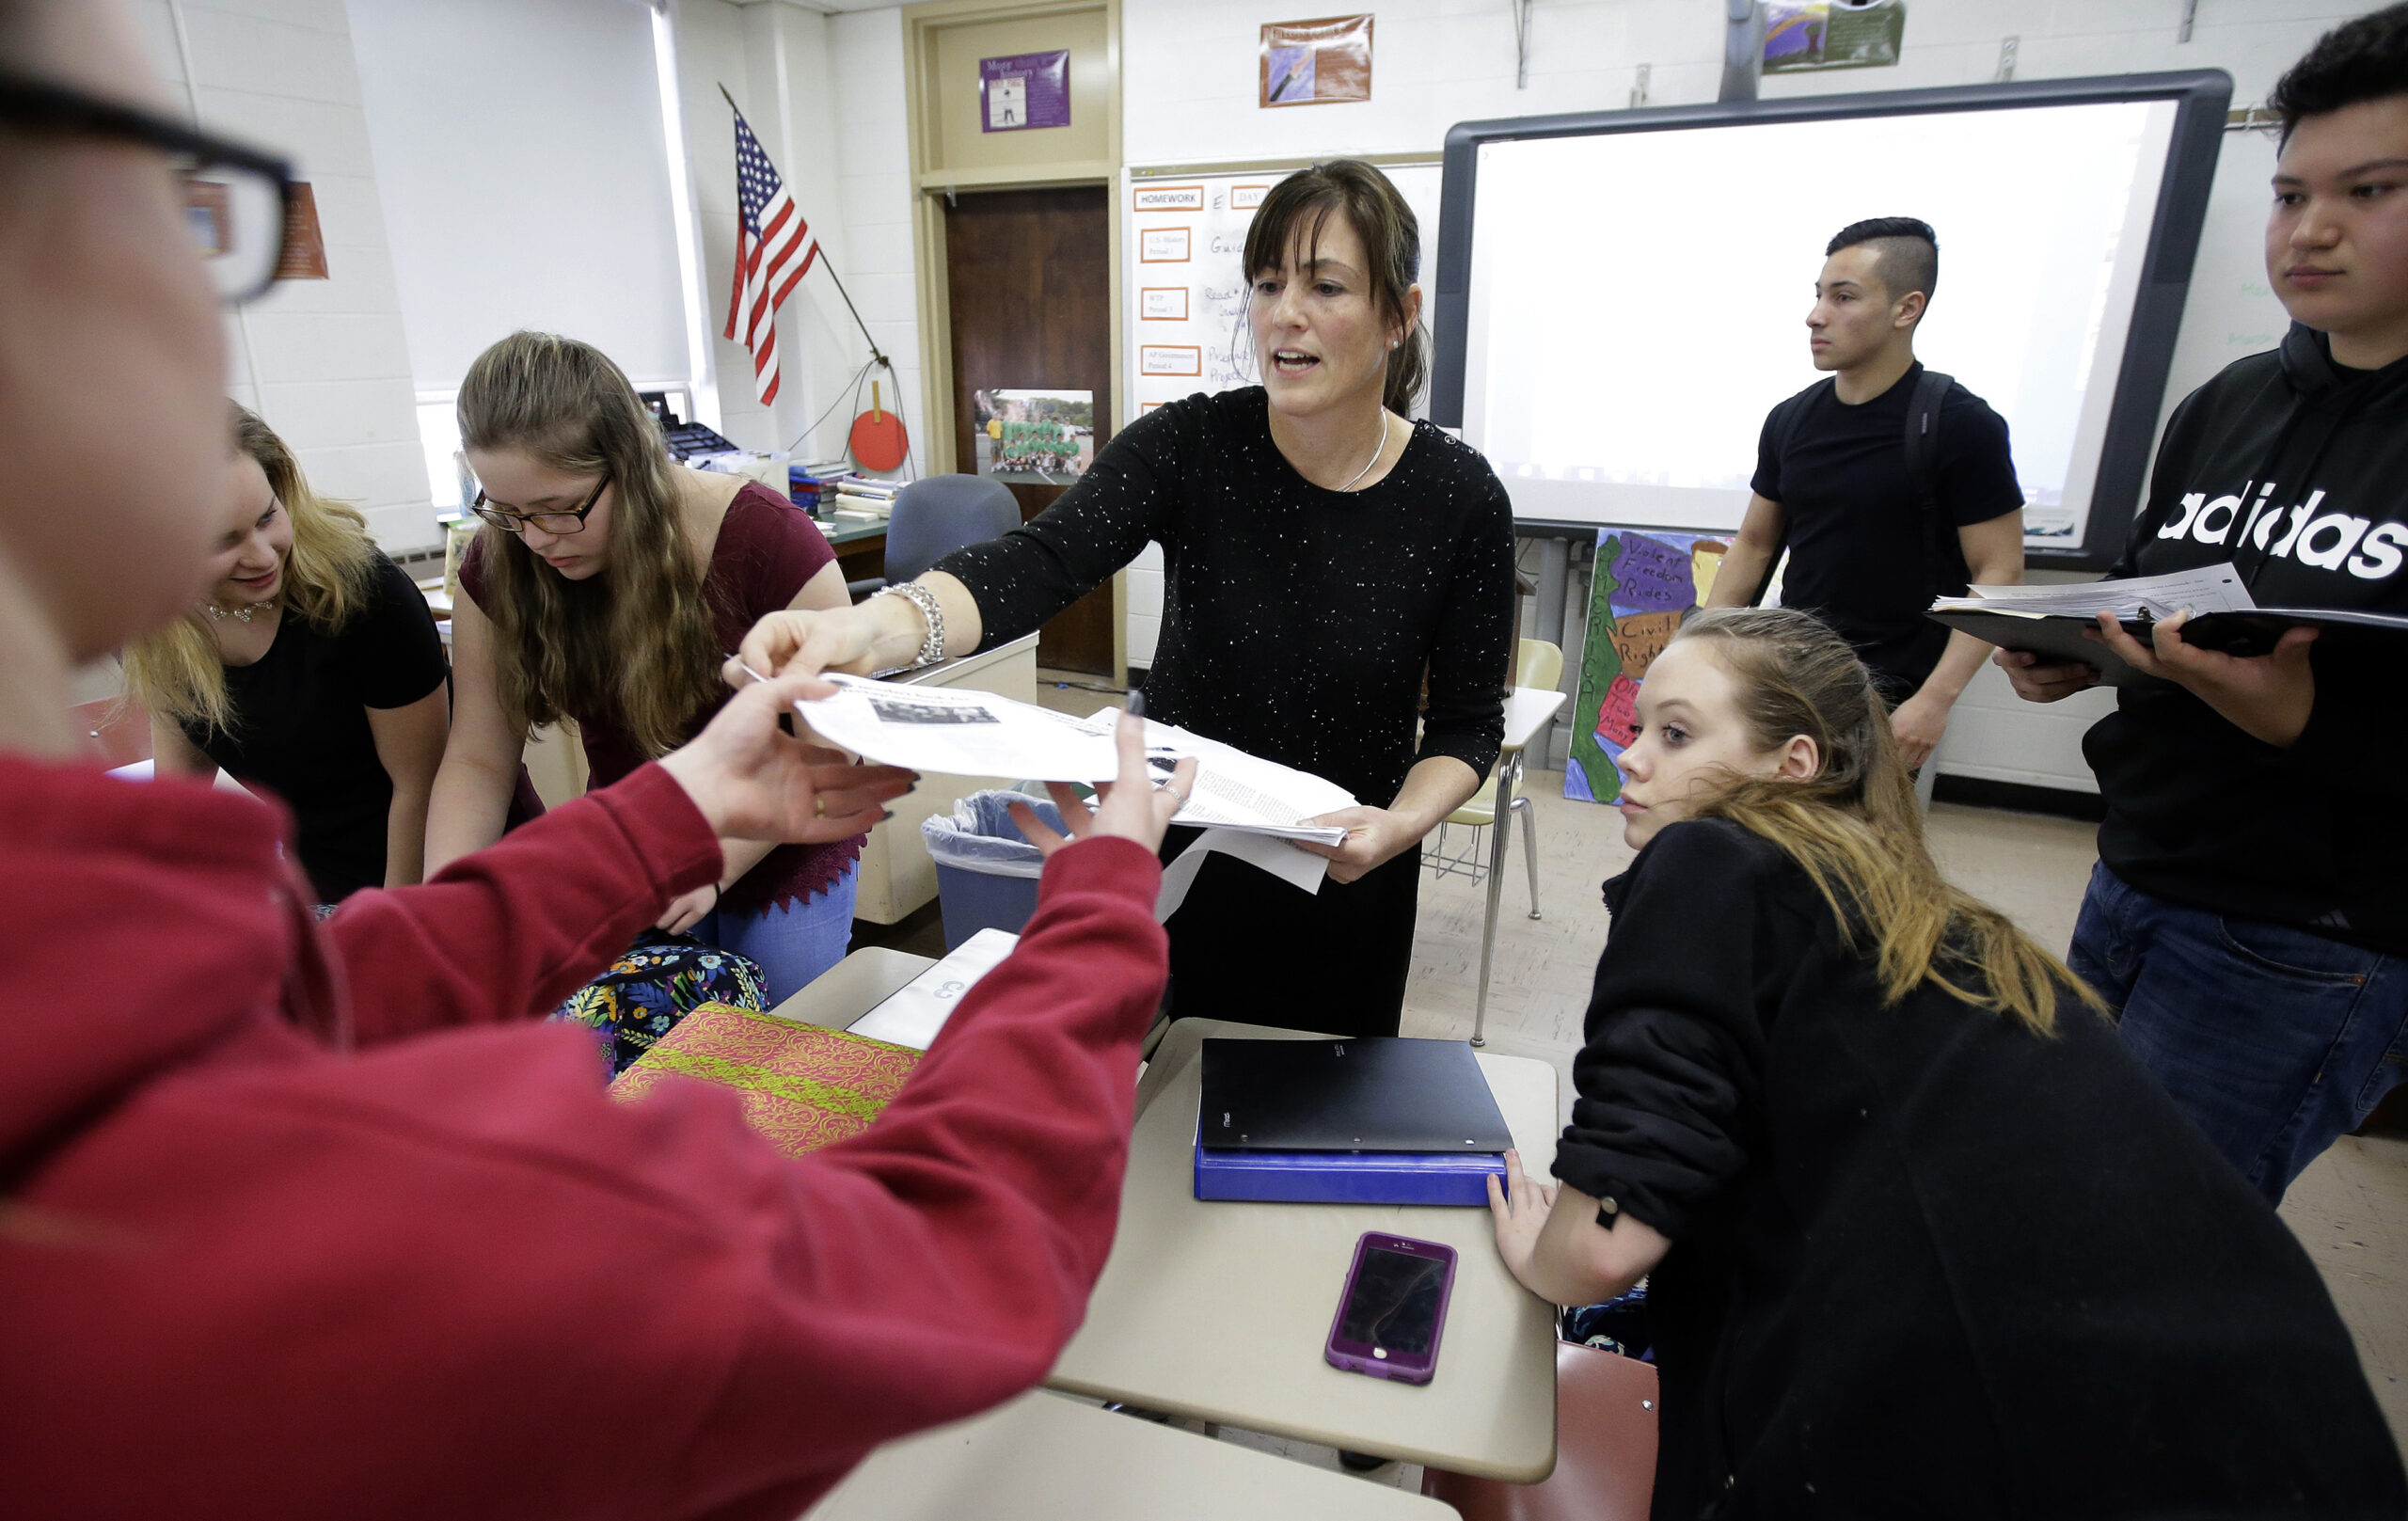 High school teacher Natalie O'Brien, center, hands out papers